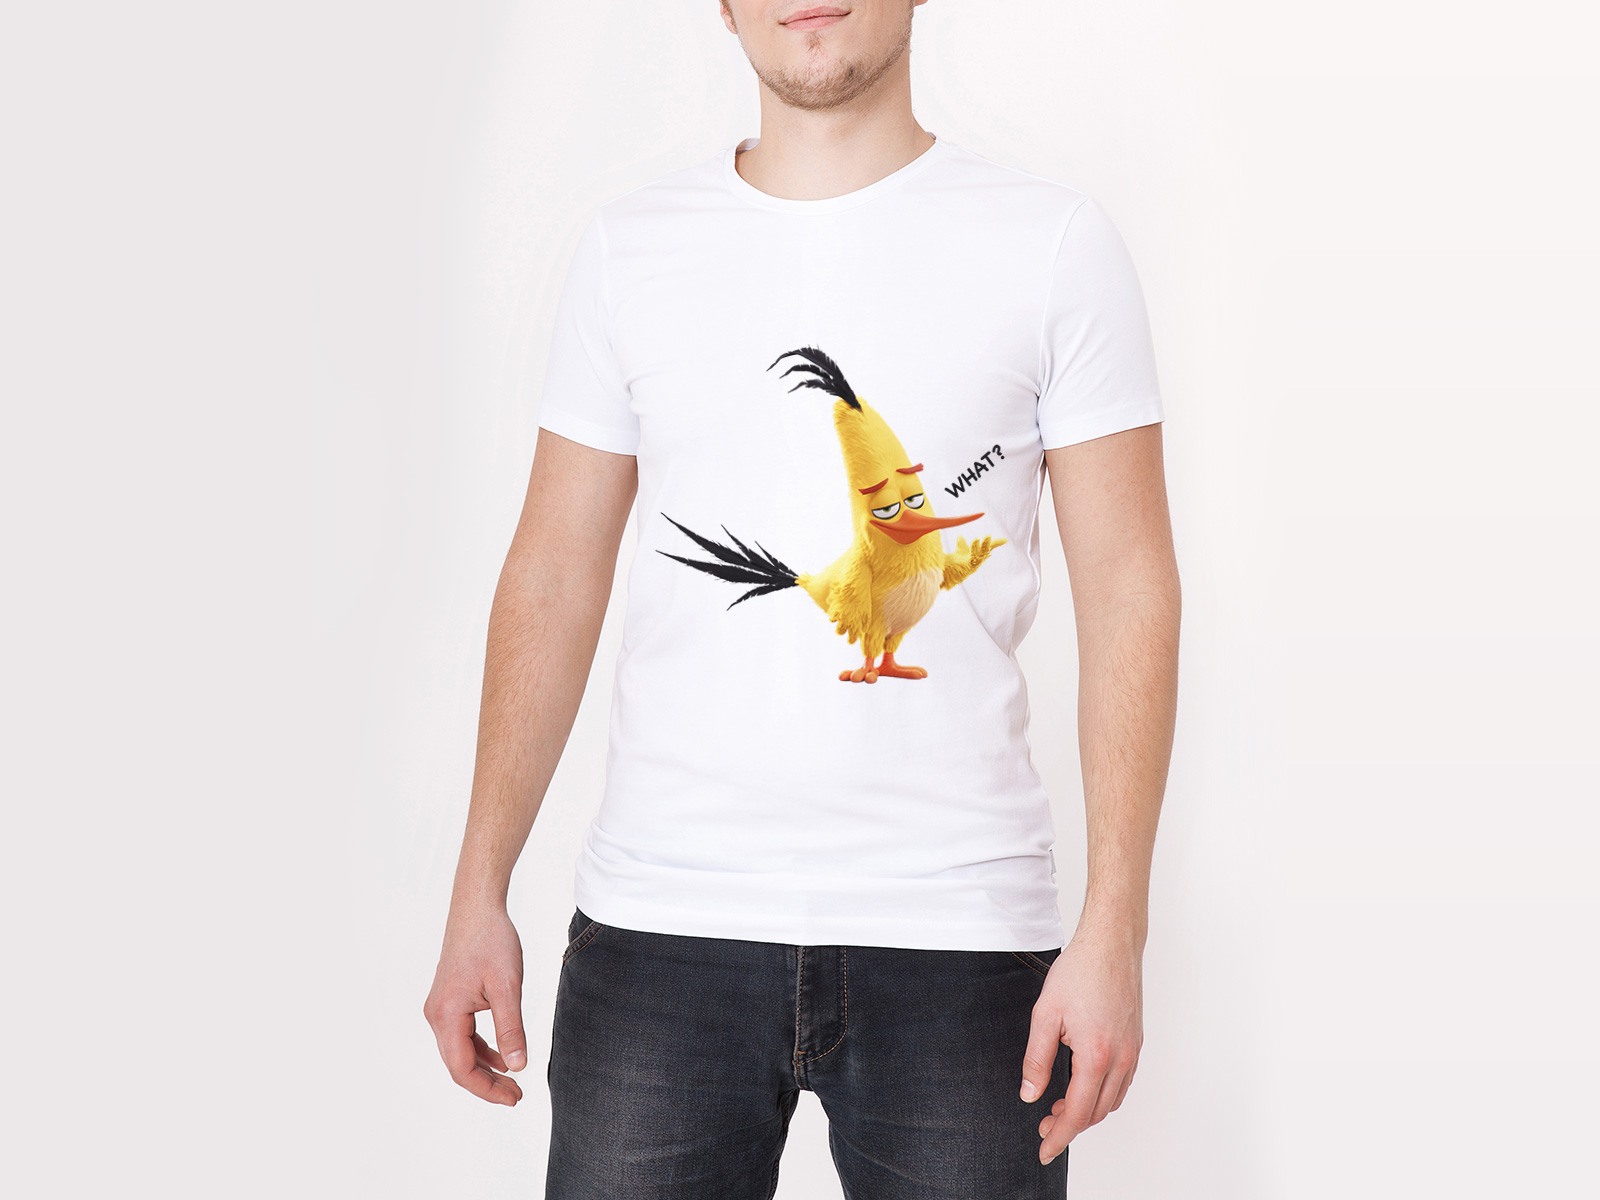 Birds одежда. Марка одежды с птицей. Футболка с желтой птицей. Фирма одежды птичка желтая. Бренд одежды с желтой птичкой.